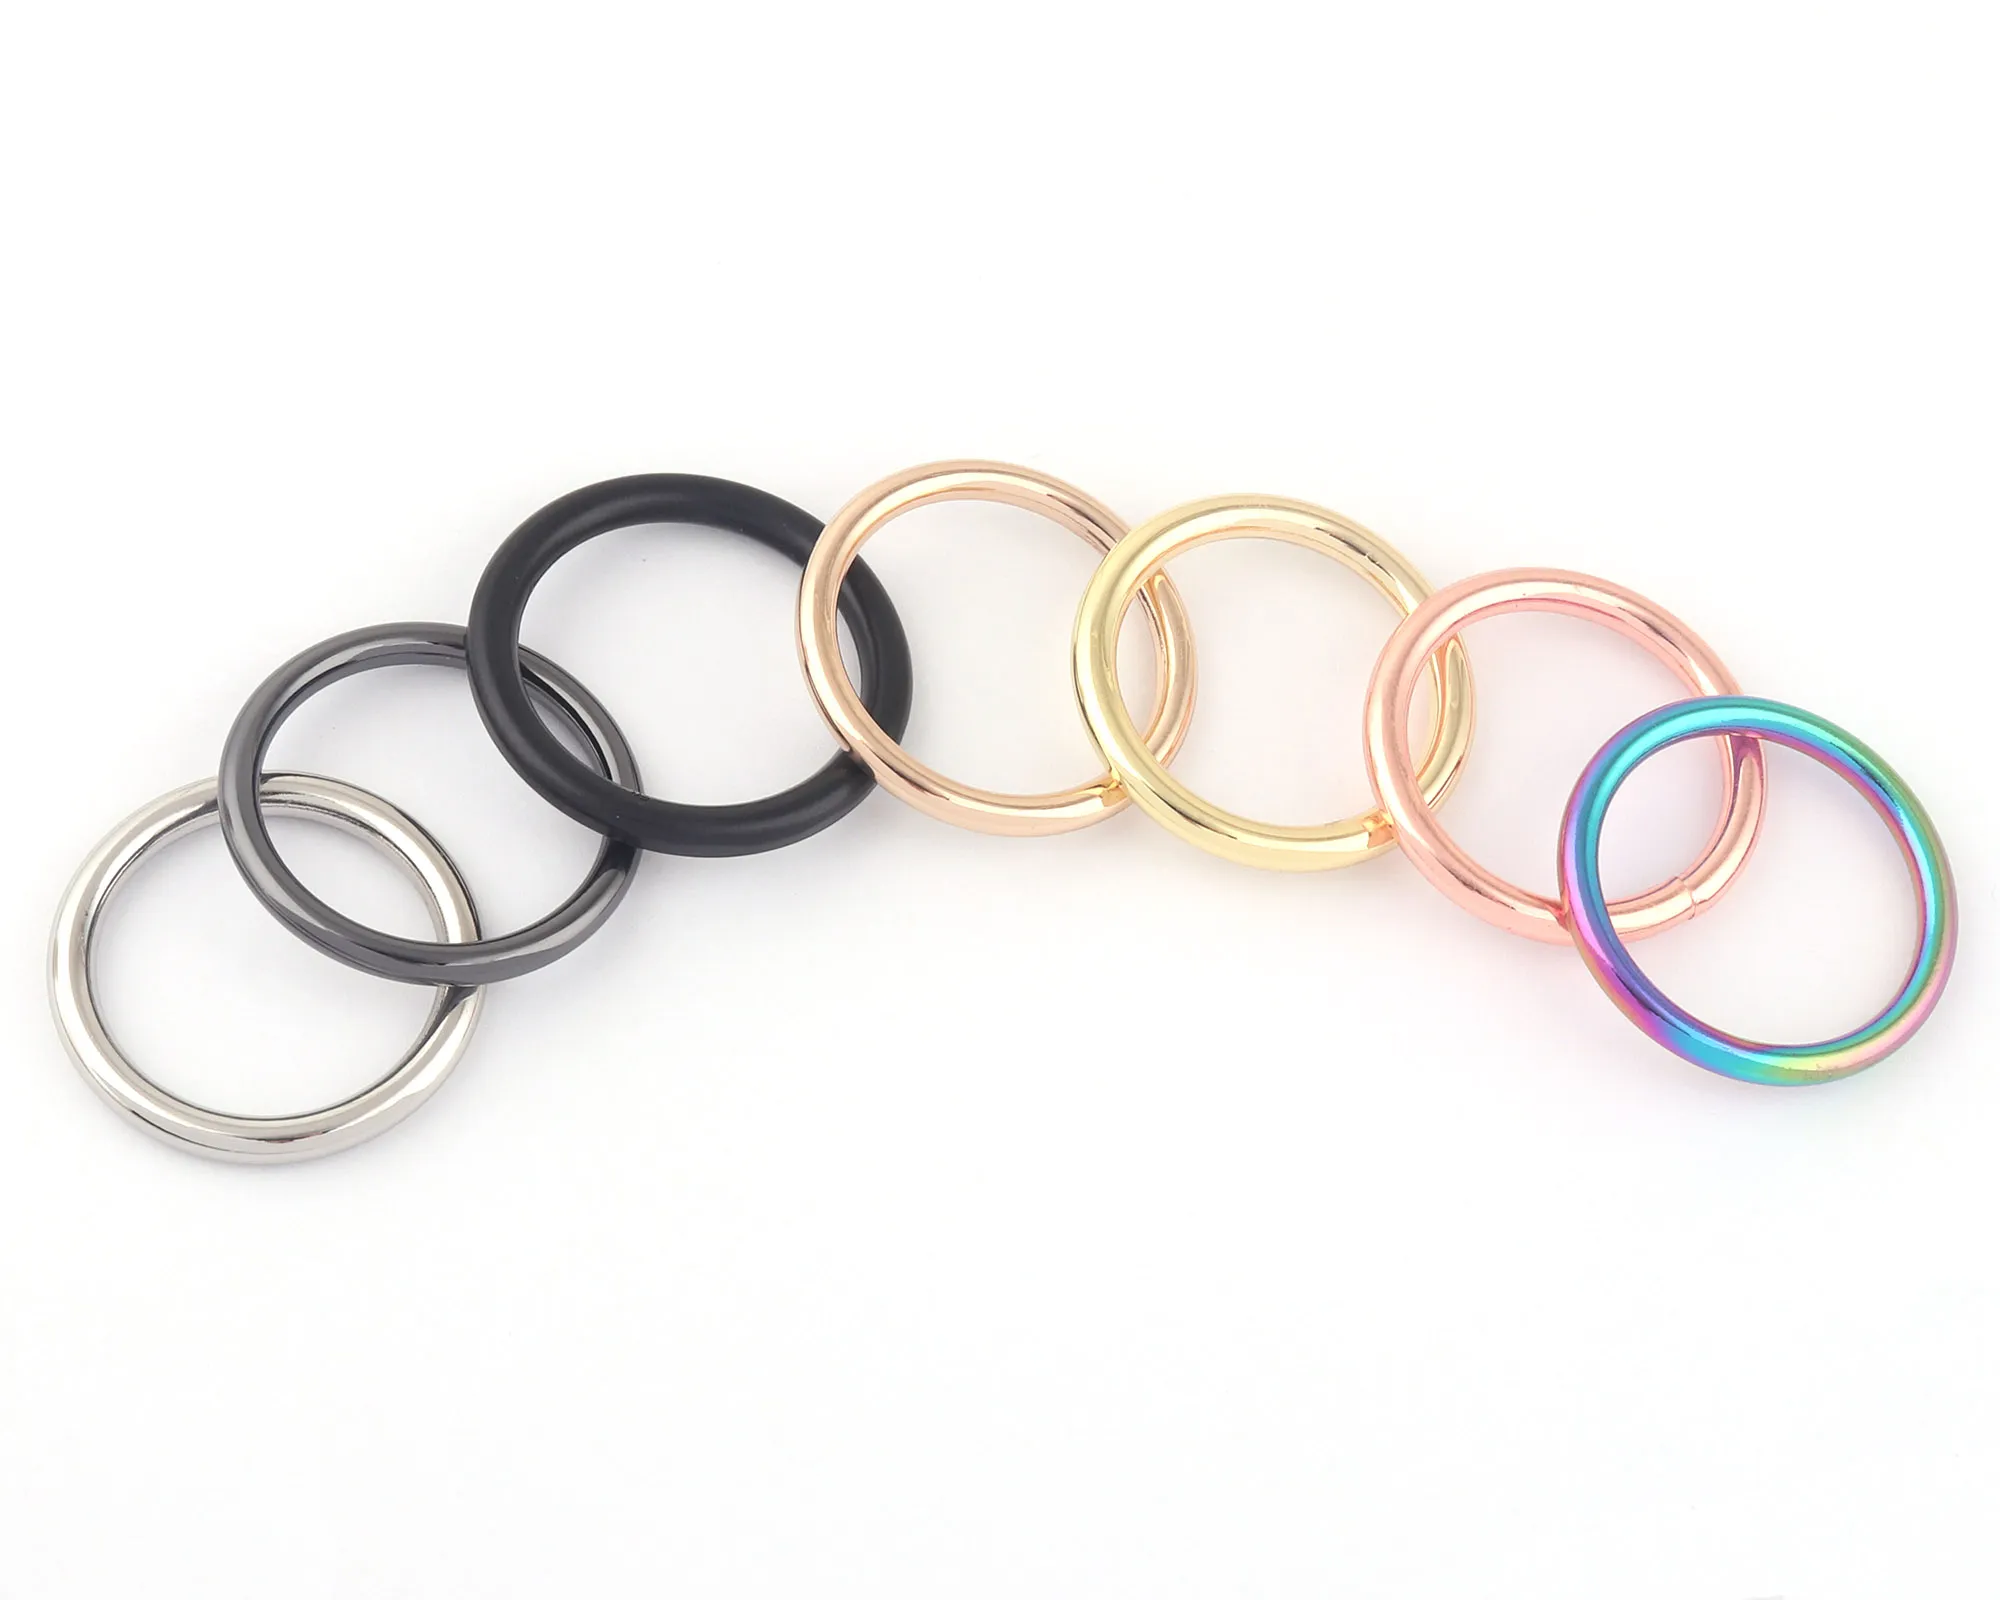 Slide in metallo arcobaleno da 25 mm ONello saldato Hanello in cordino rotondo, anello della borsa borsetta che produce artigianato in pelle hardware